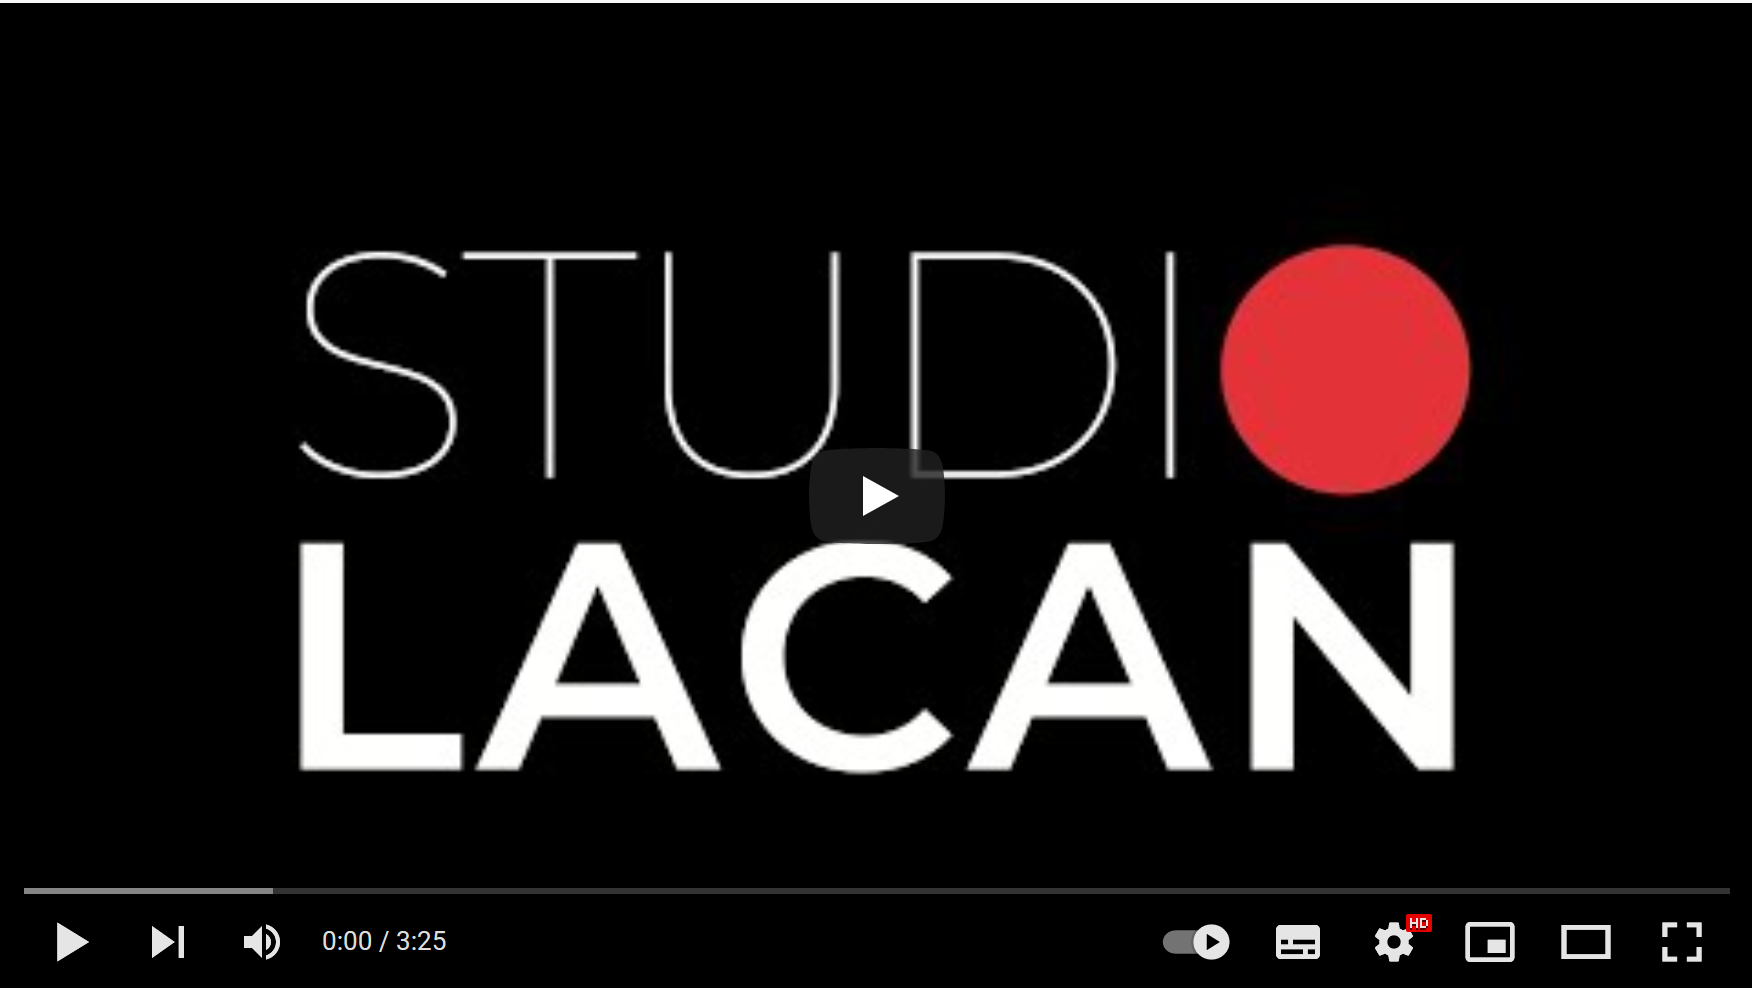 Lancement émission Studio Lacan - Cliquer sur l'image pour vous abonner